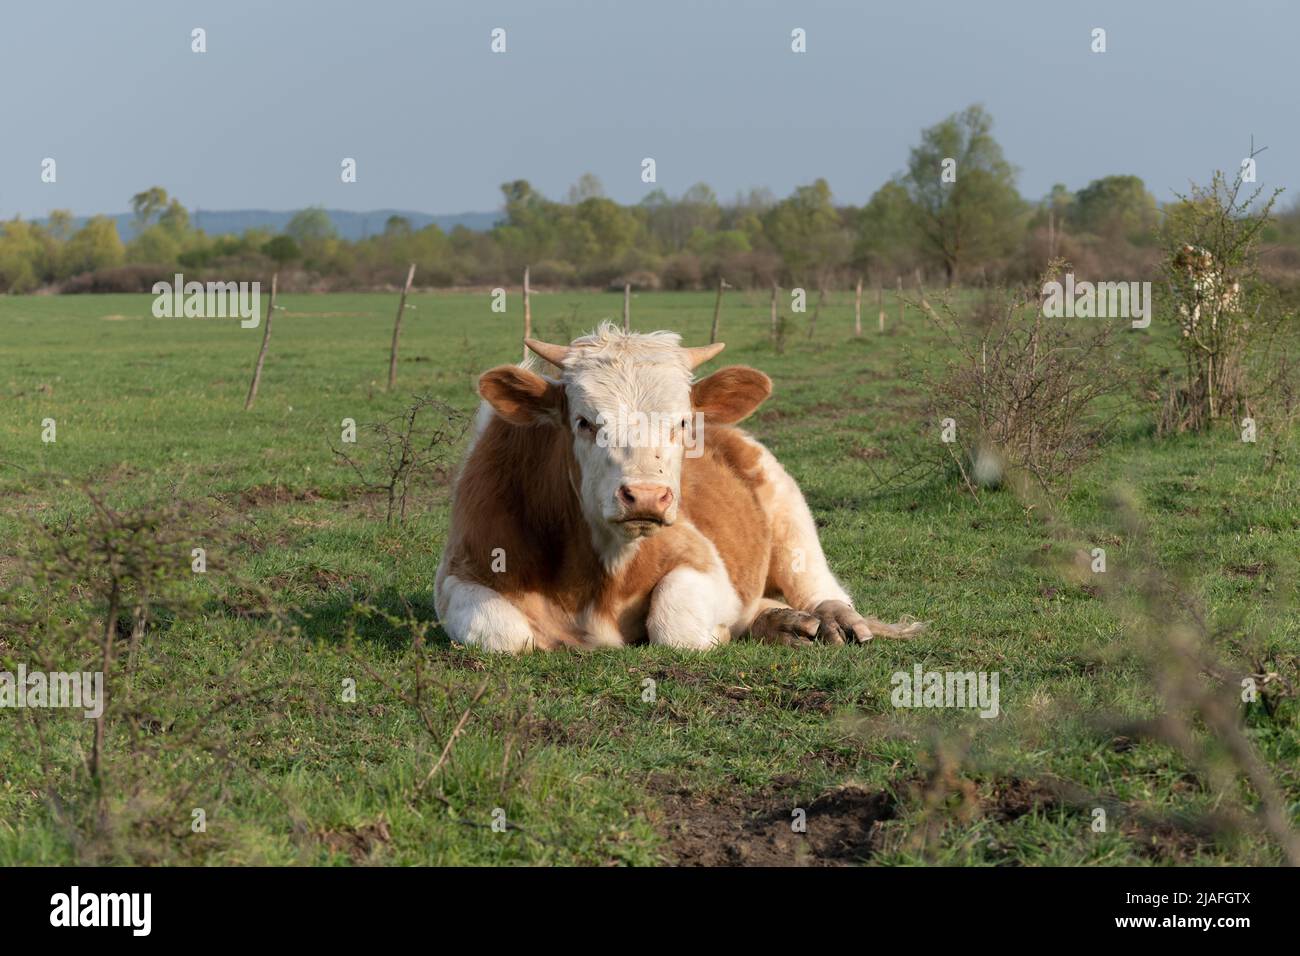 Stier ruht auf dem Feld, erwachsenes Haustier mit orangefarbenen und weißen Haaren, das sich an sonnigen Tagen auf der Weide auf Gras legt Stockfoto